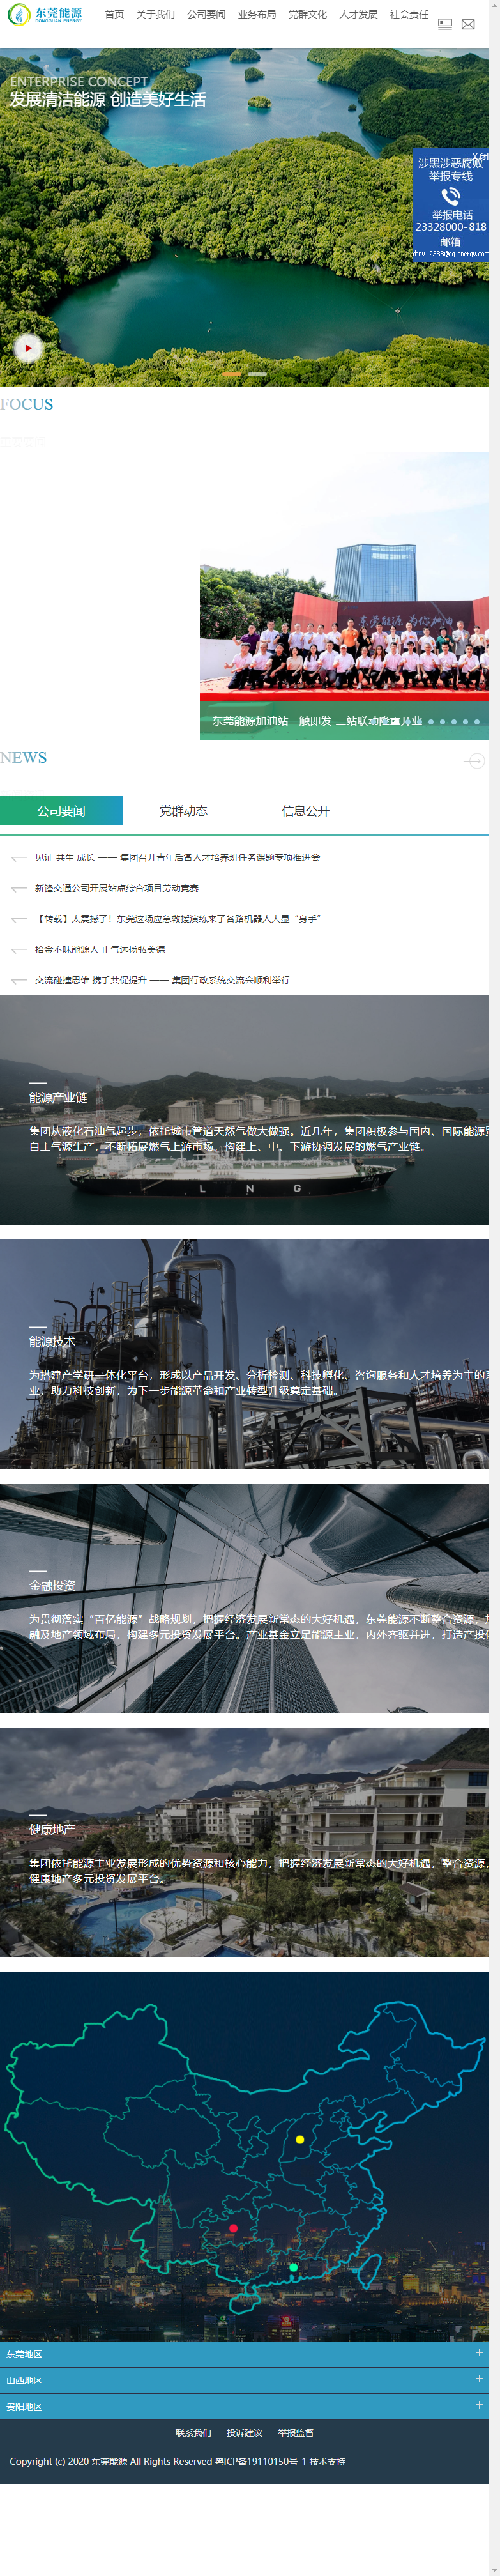 东莞市能源投资集团有限公司网站案例